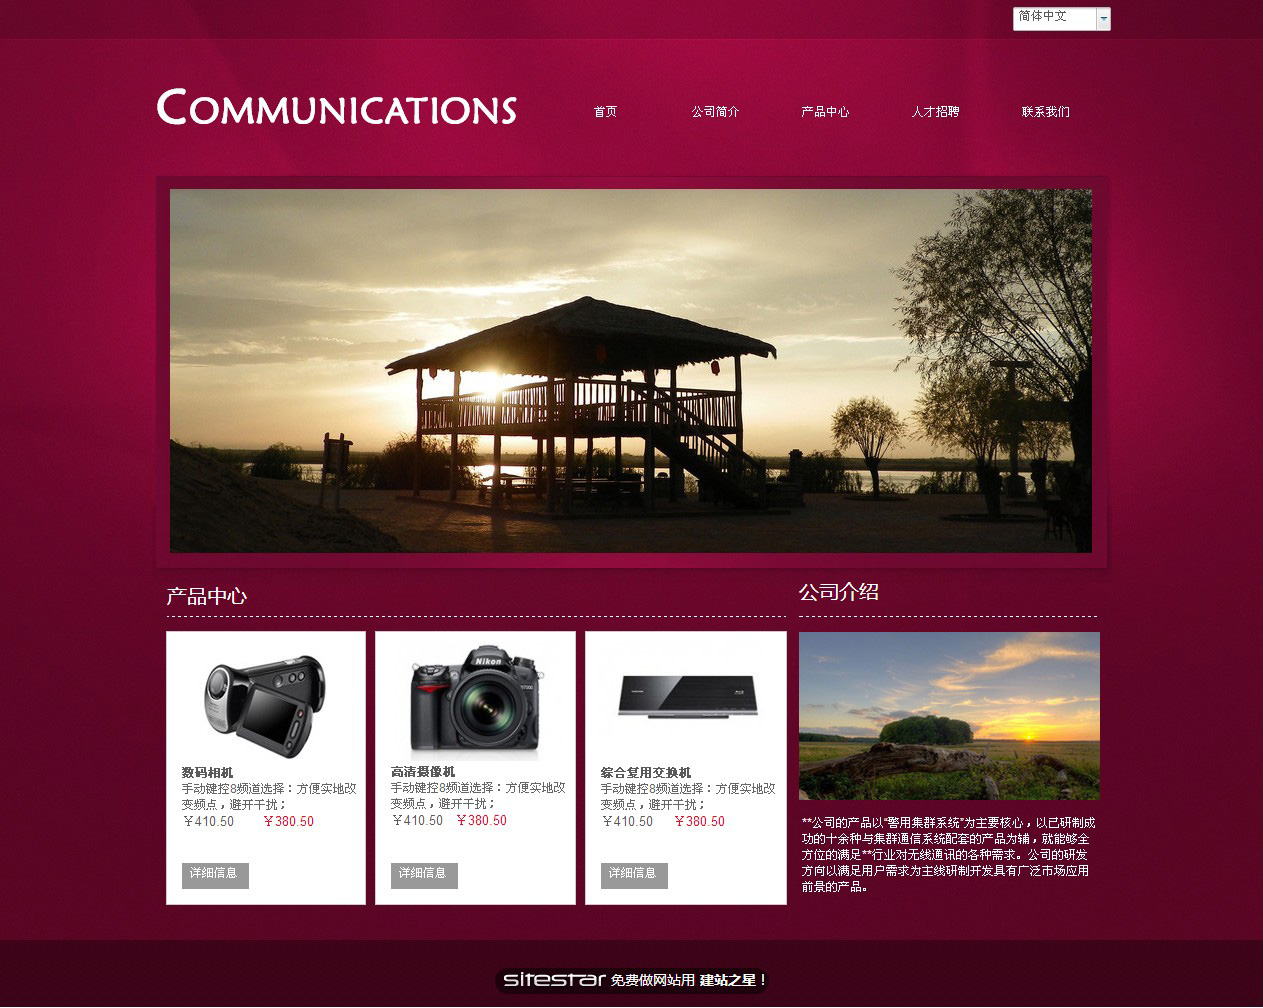 通讯、数码网站模板-communications-8